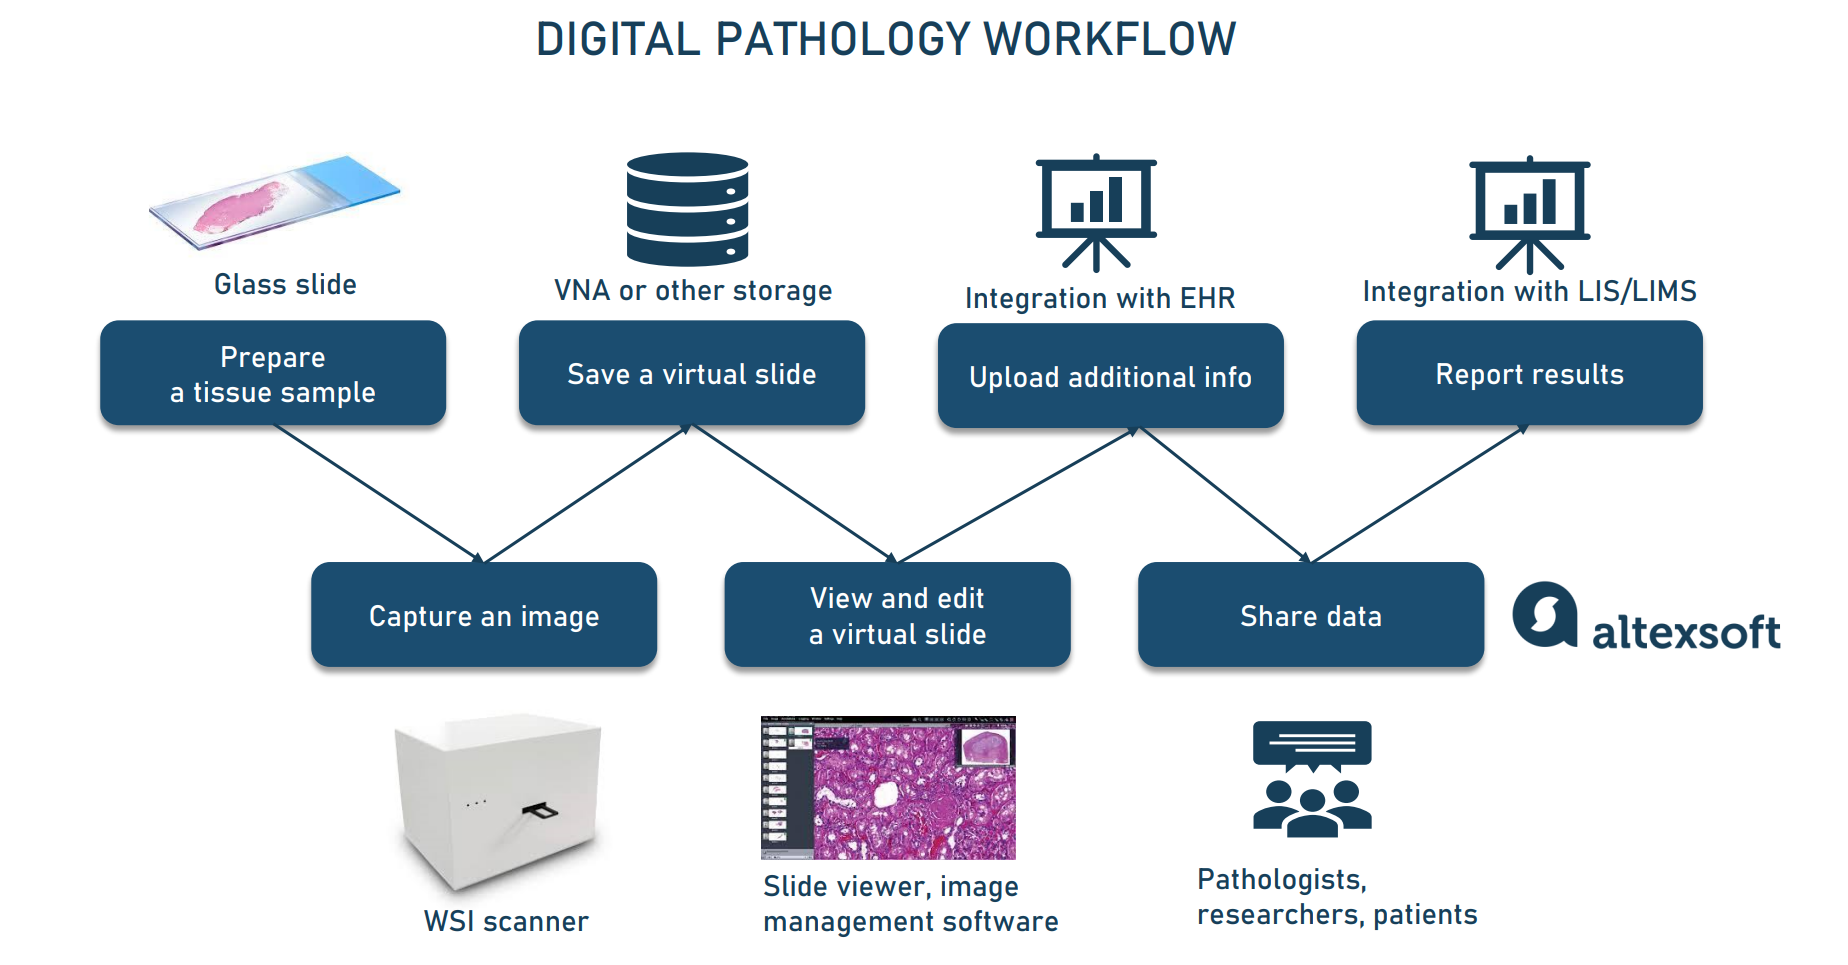 Digital pathology workflow